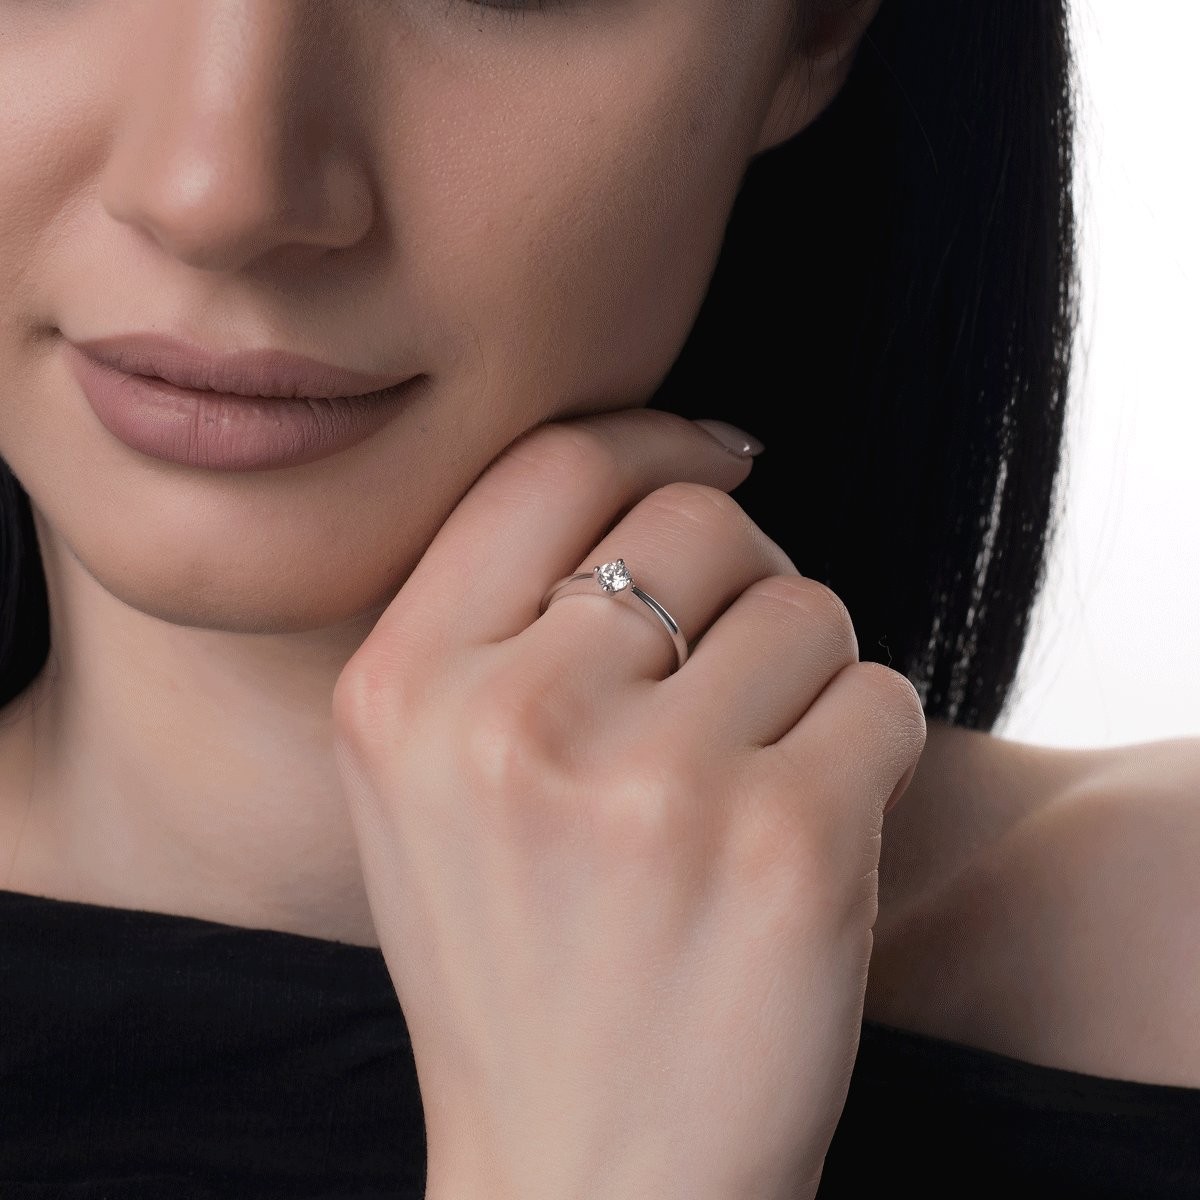 Inel de logodna din aur alb de 18K cu un diamant solitaire de 0.25ct